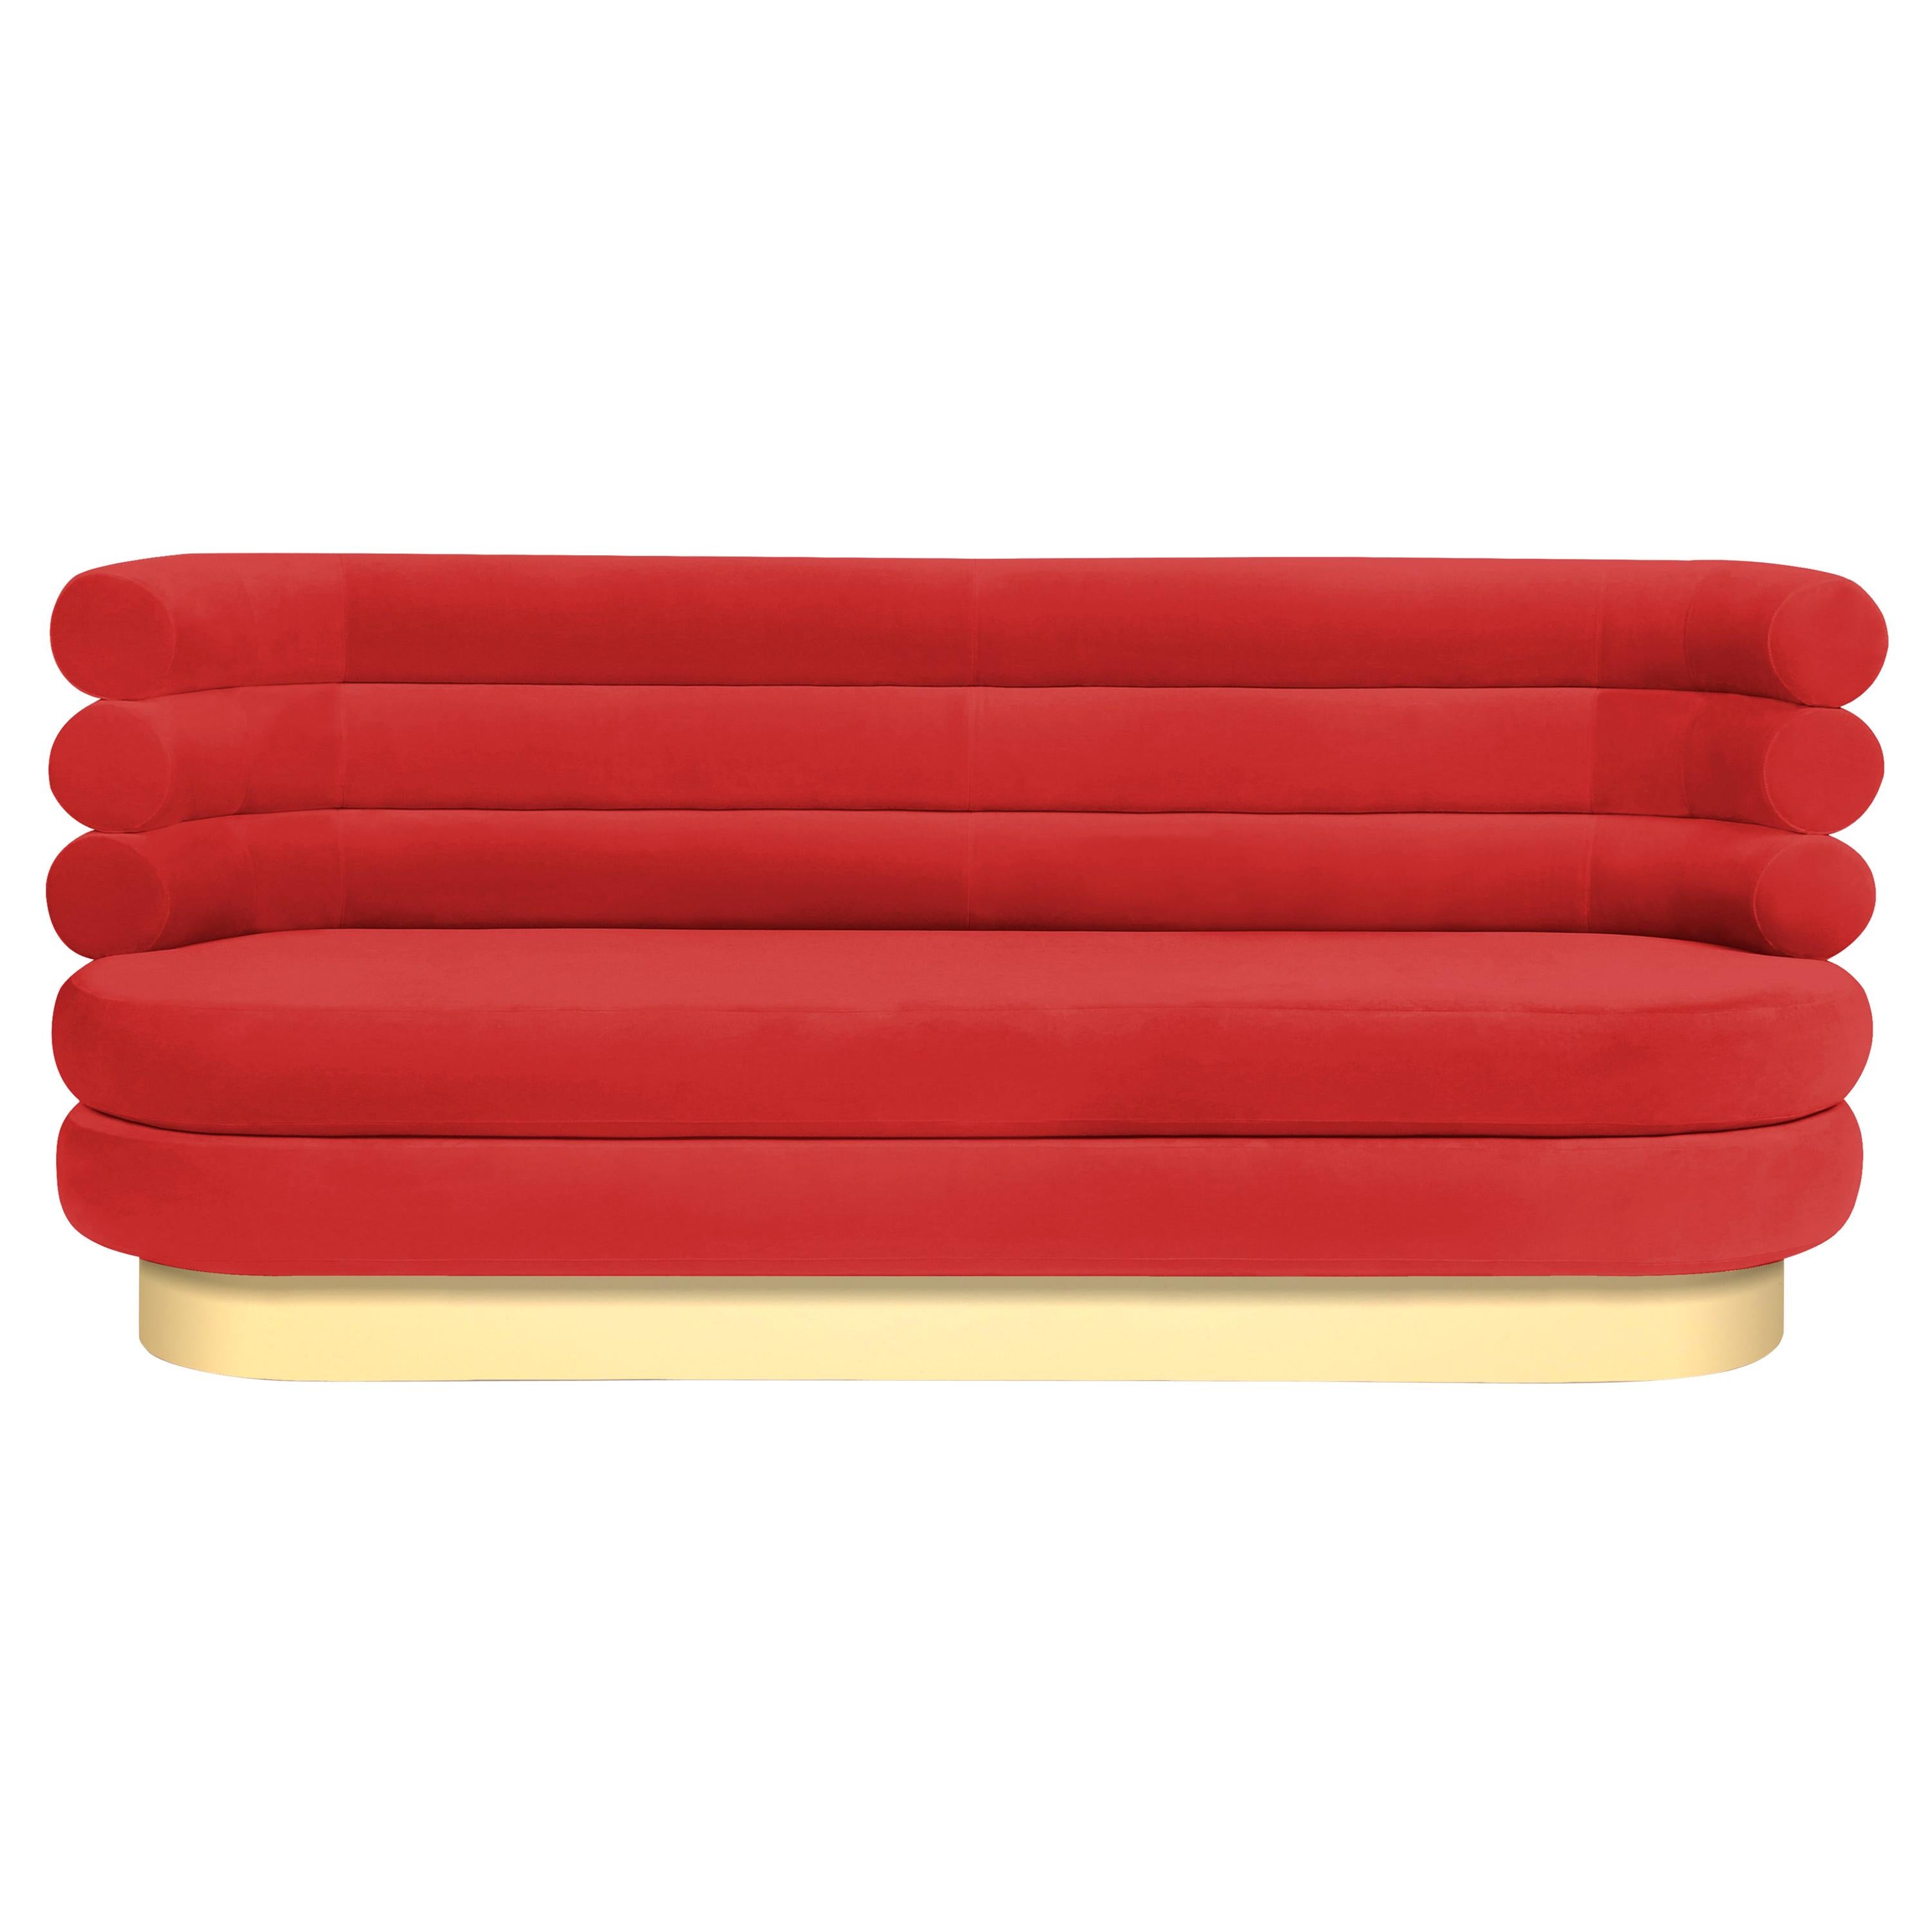 Canapé Marshmallow rouge coloré « Royal Stranger » (étranger royal)